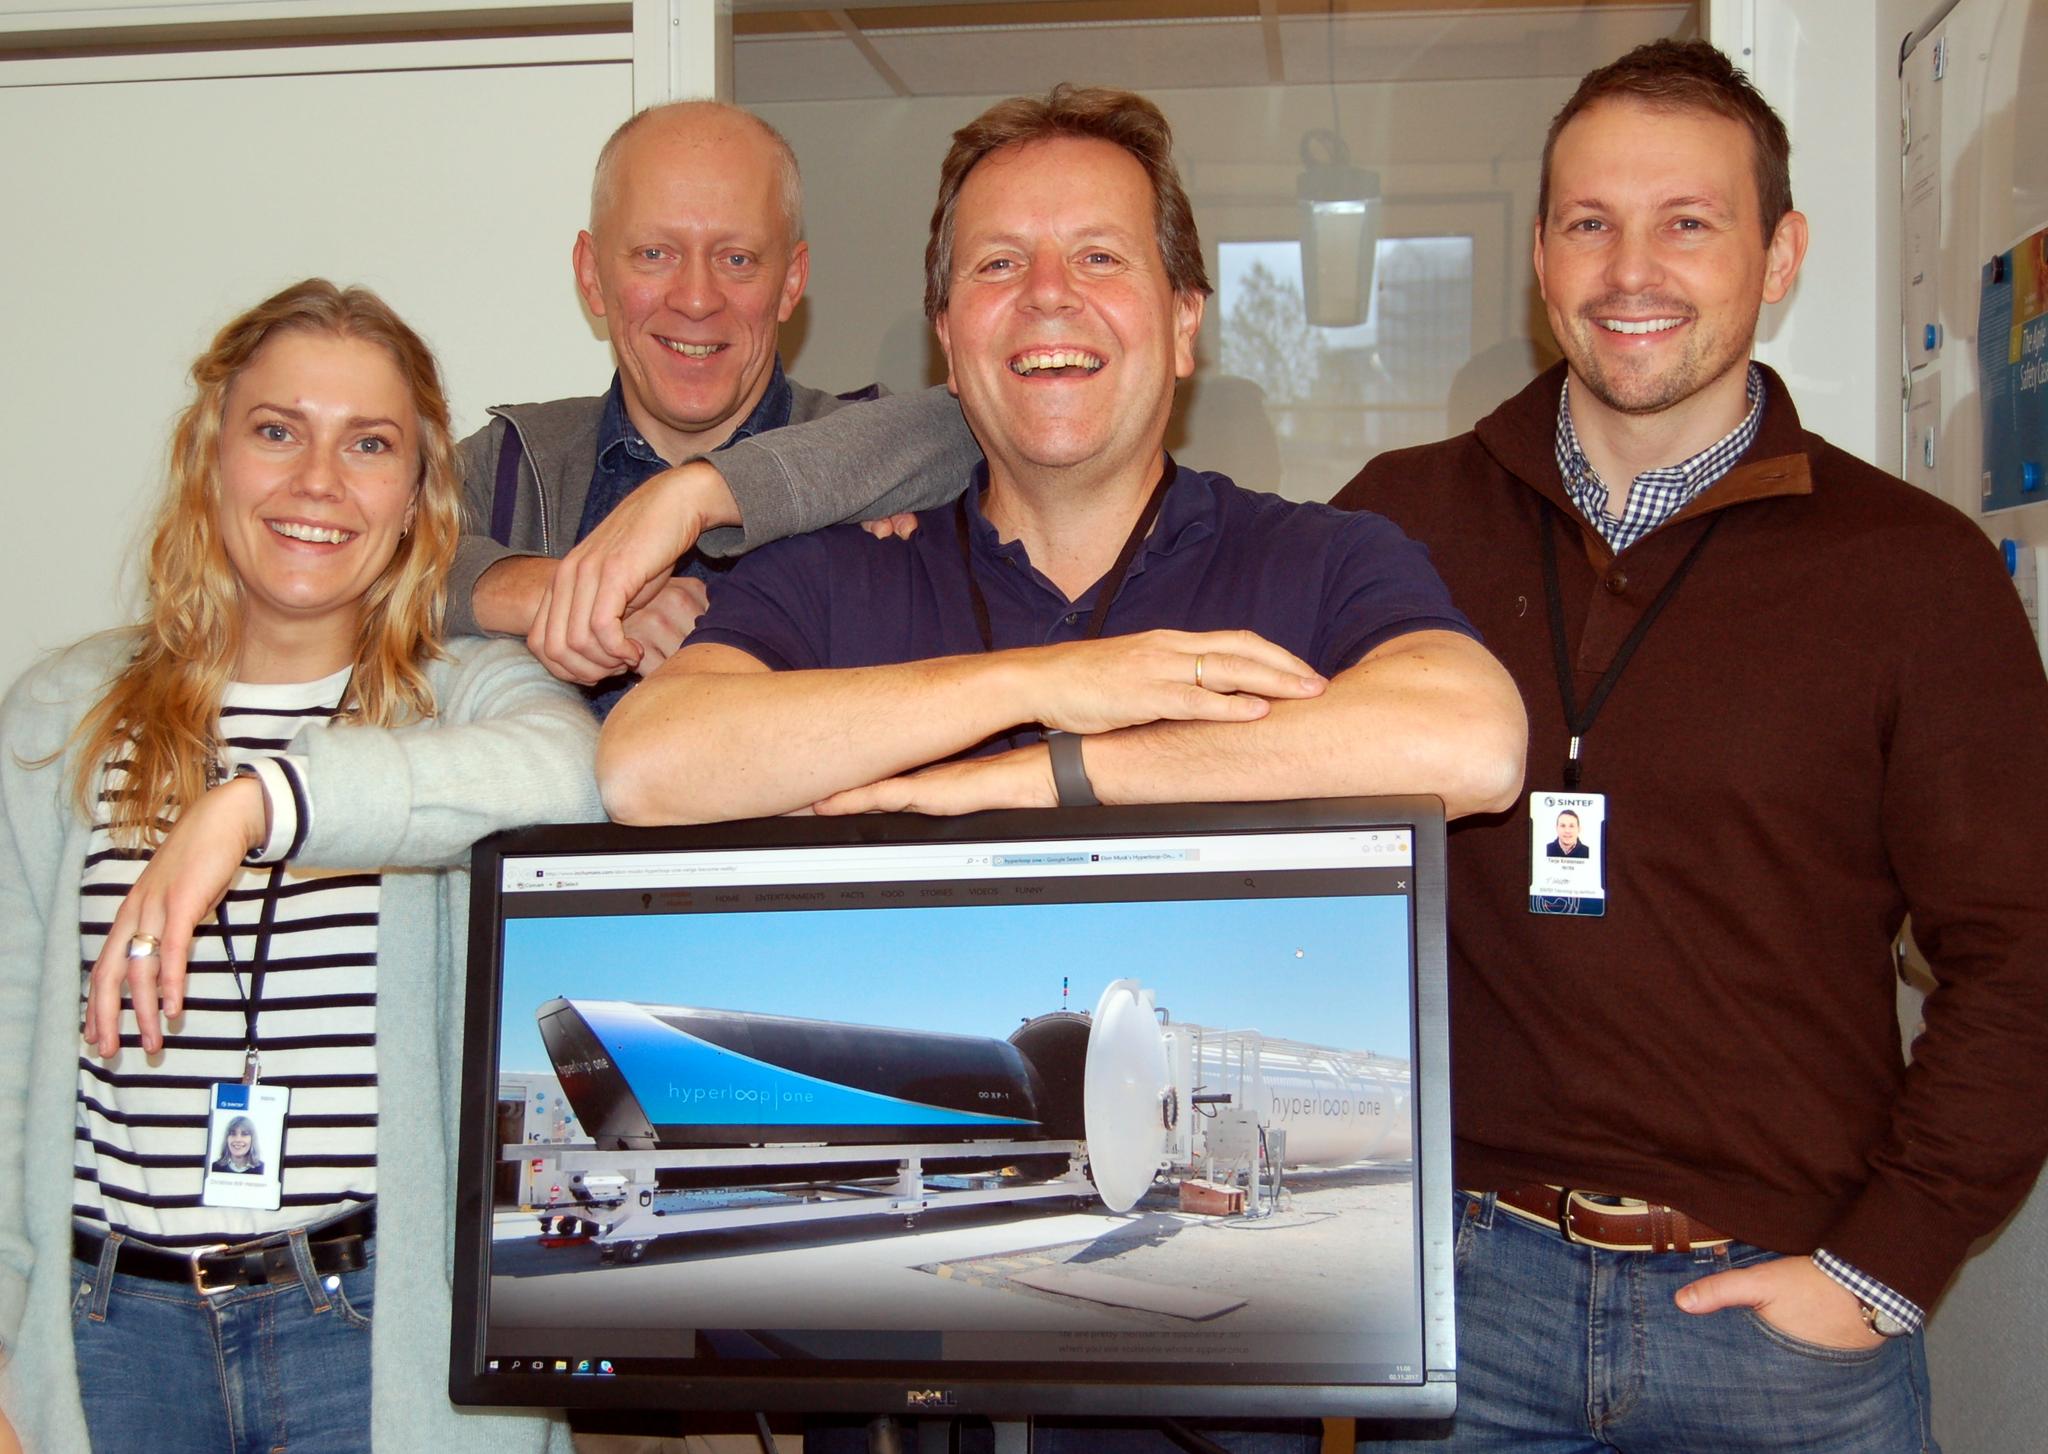  Har tro på hyperloop-teknologien. Et team fra SINTEF fotografert etter hjemkomst fra besøk hos selskapet Virgin Hyperloop One i USA. Fra venstre: Christina Hanssen, Geir Kjetil Hanssen, Thor Myklebust og Terje Kristensen.